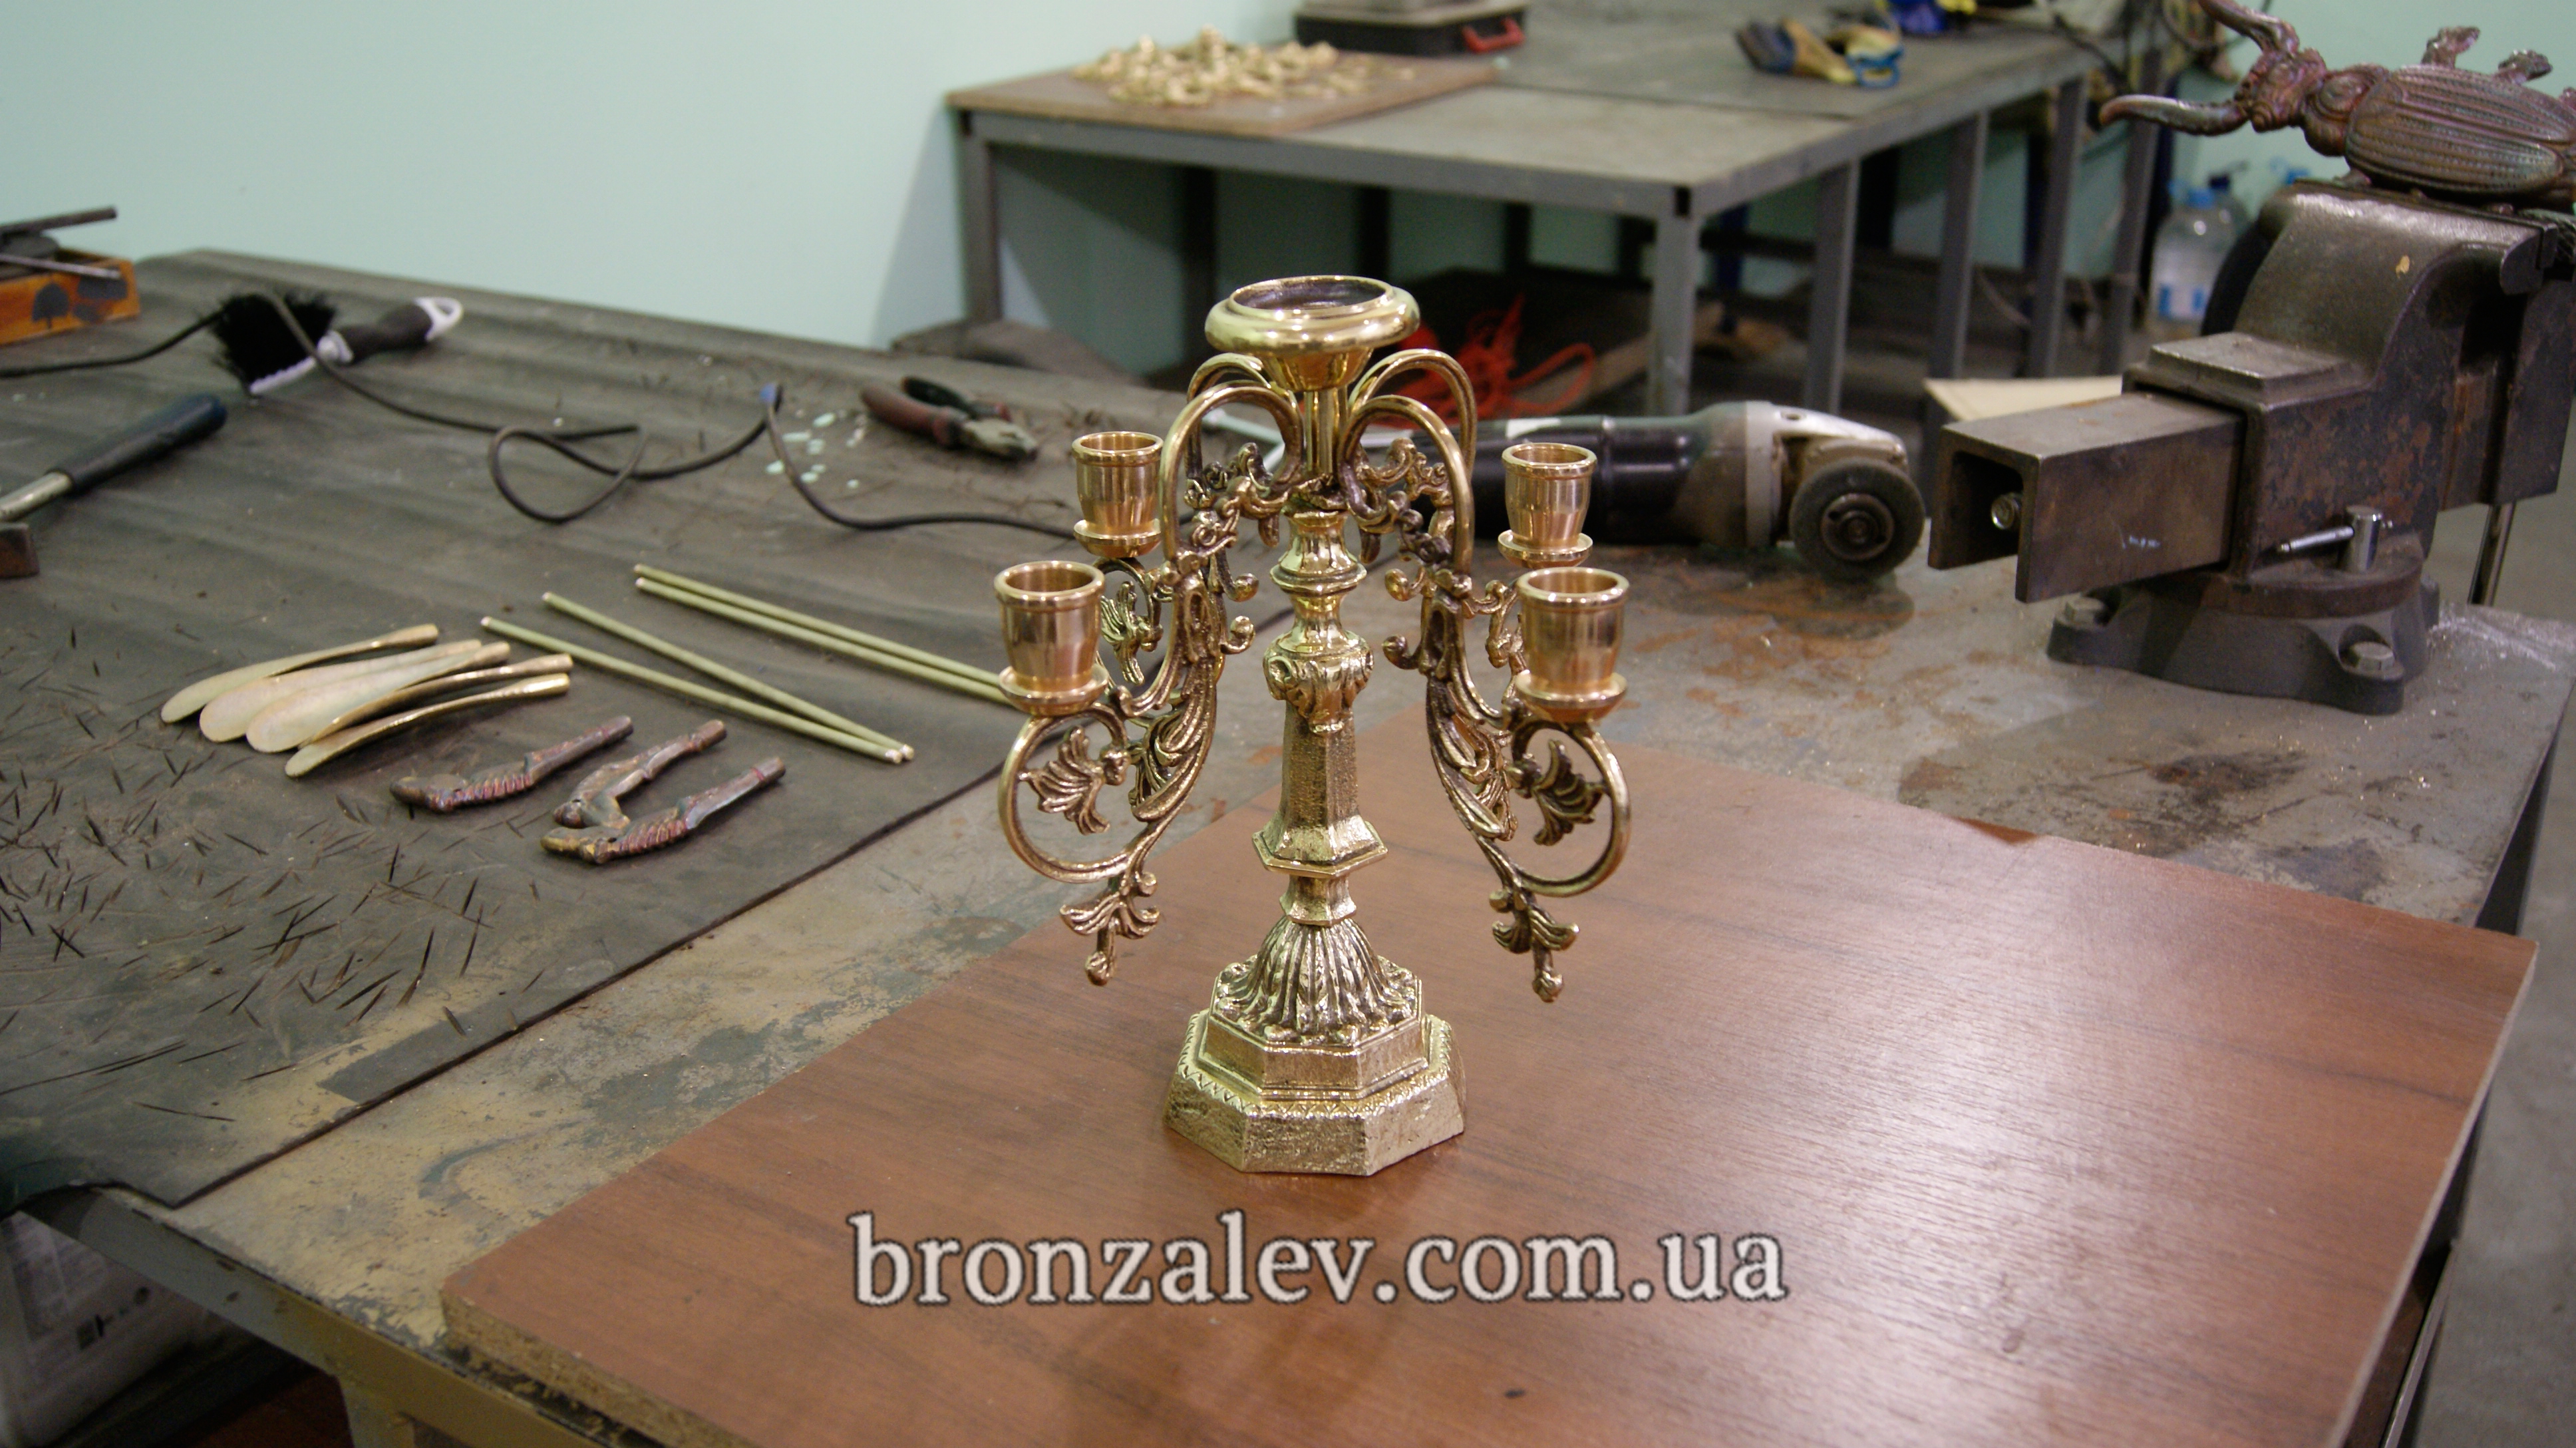 Реставрация бронзовых изделий